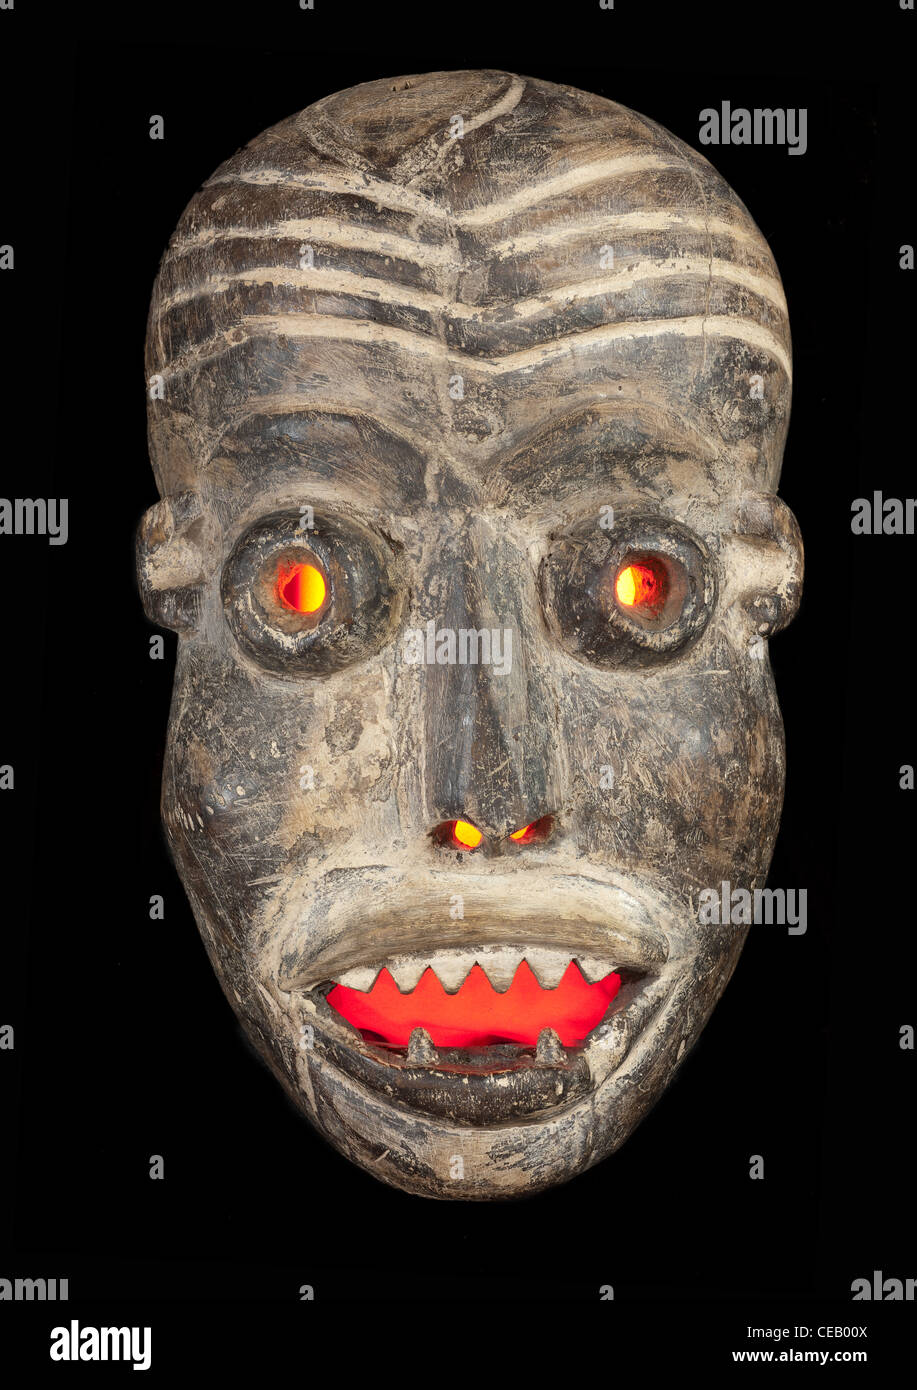 Masque tribal africain en bois sculpté, avec du bois sombre visage peint. Isolé sur fond noir. Congo, l'Afrique Banque D'Images